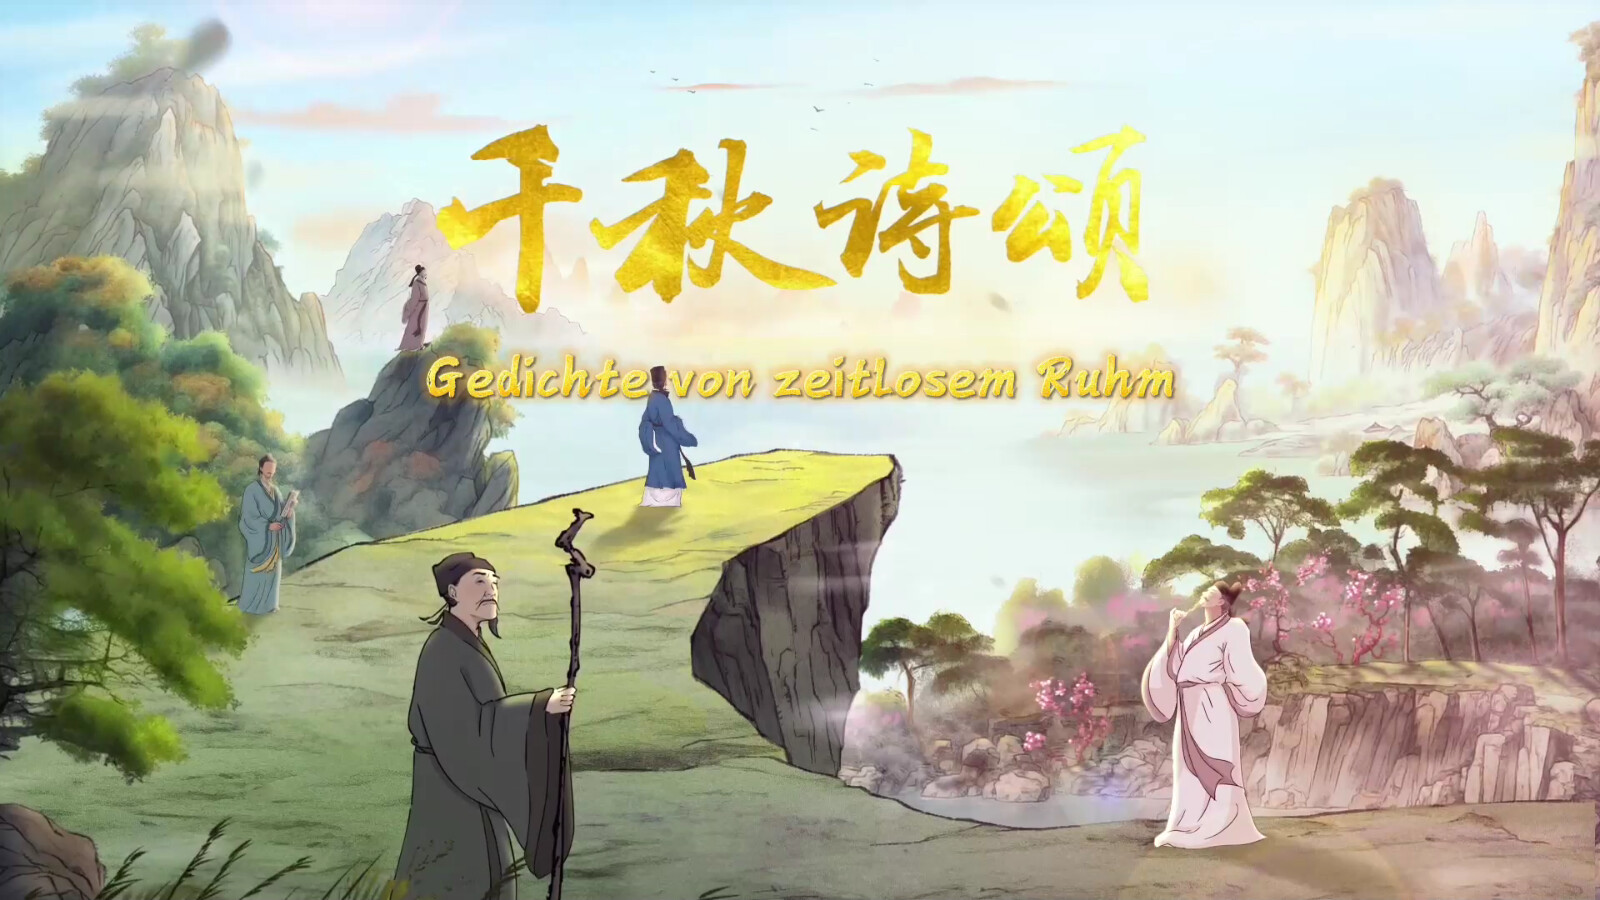 中国首部文生视频AI系列动画片《千秋诗颂》多语种版在欧洲拉美主流媒体播出